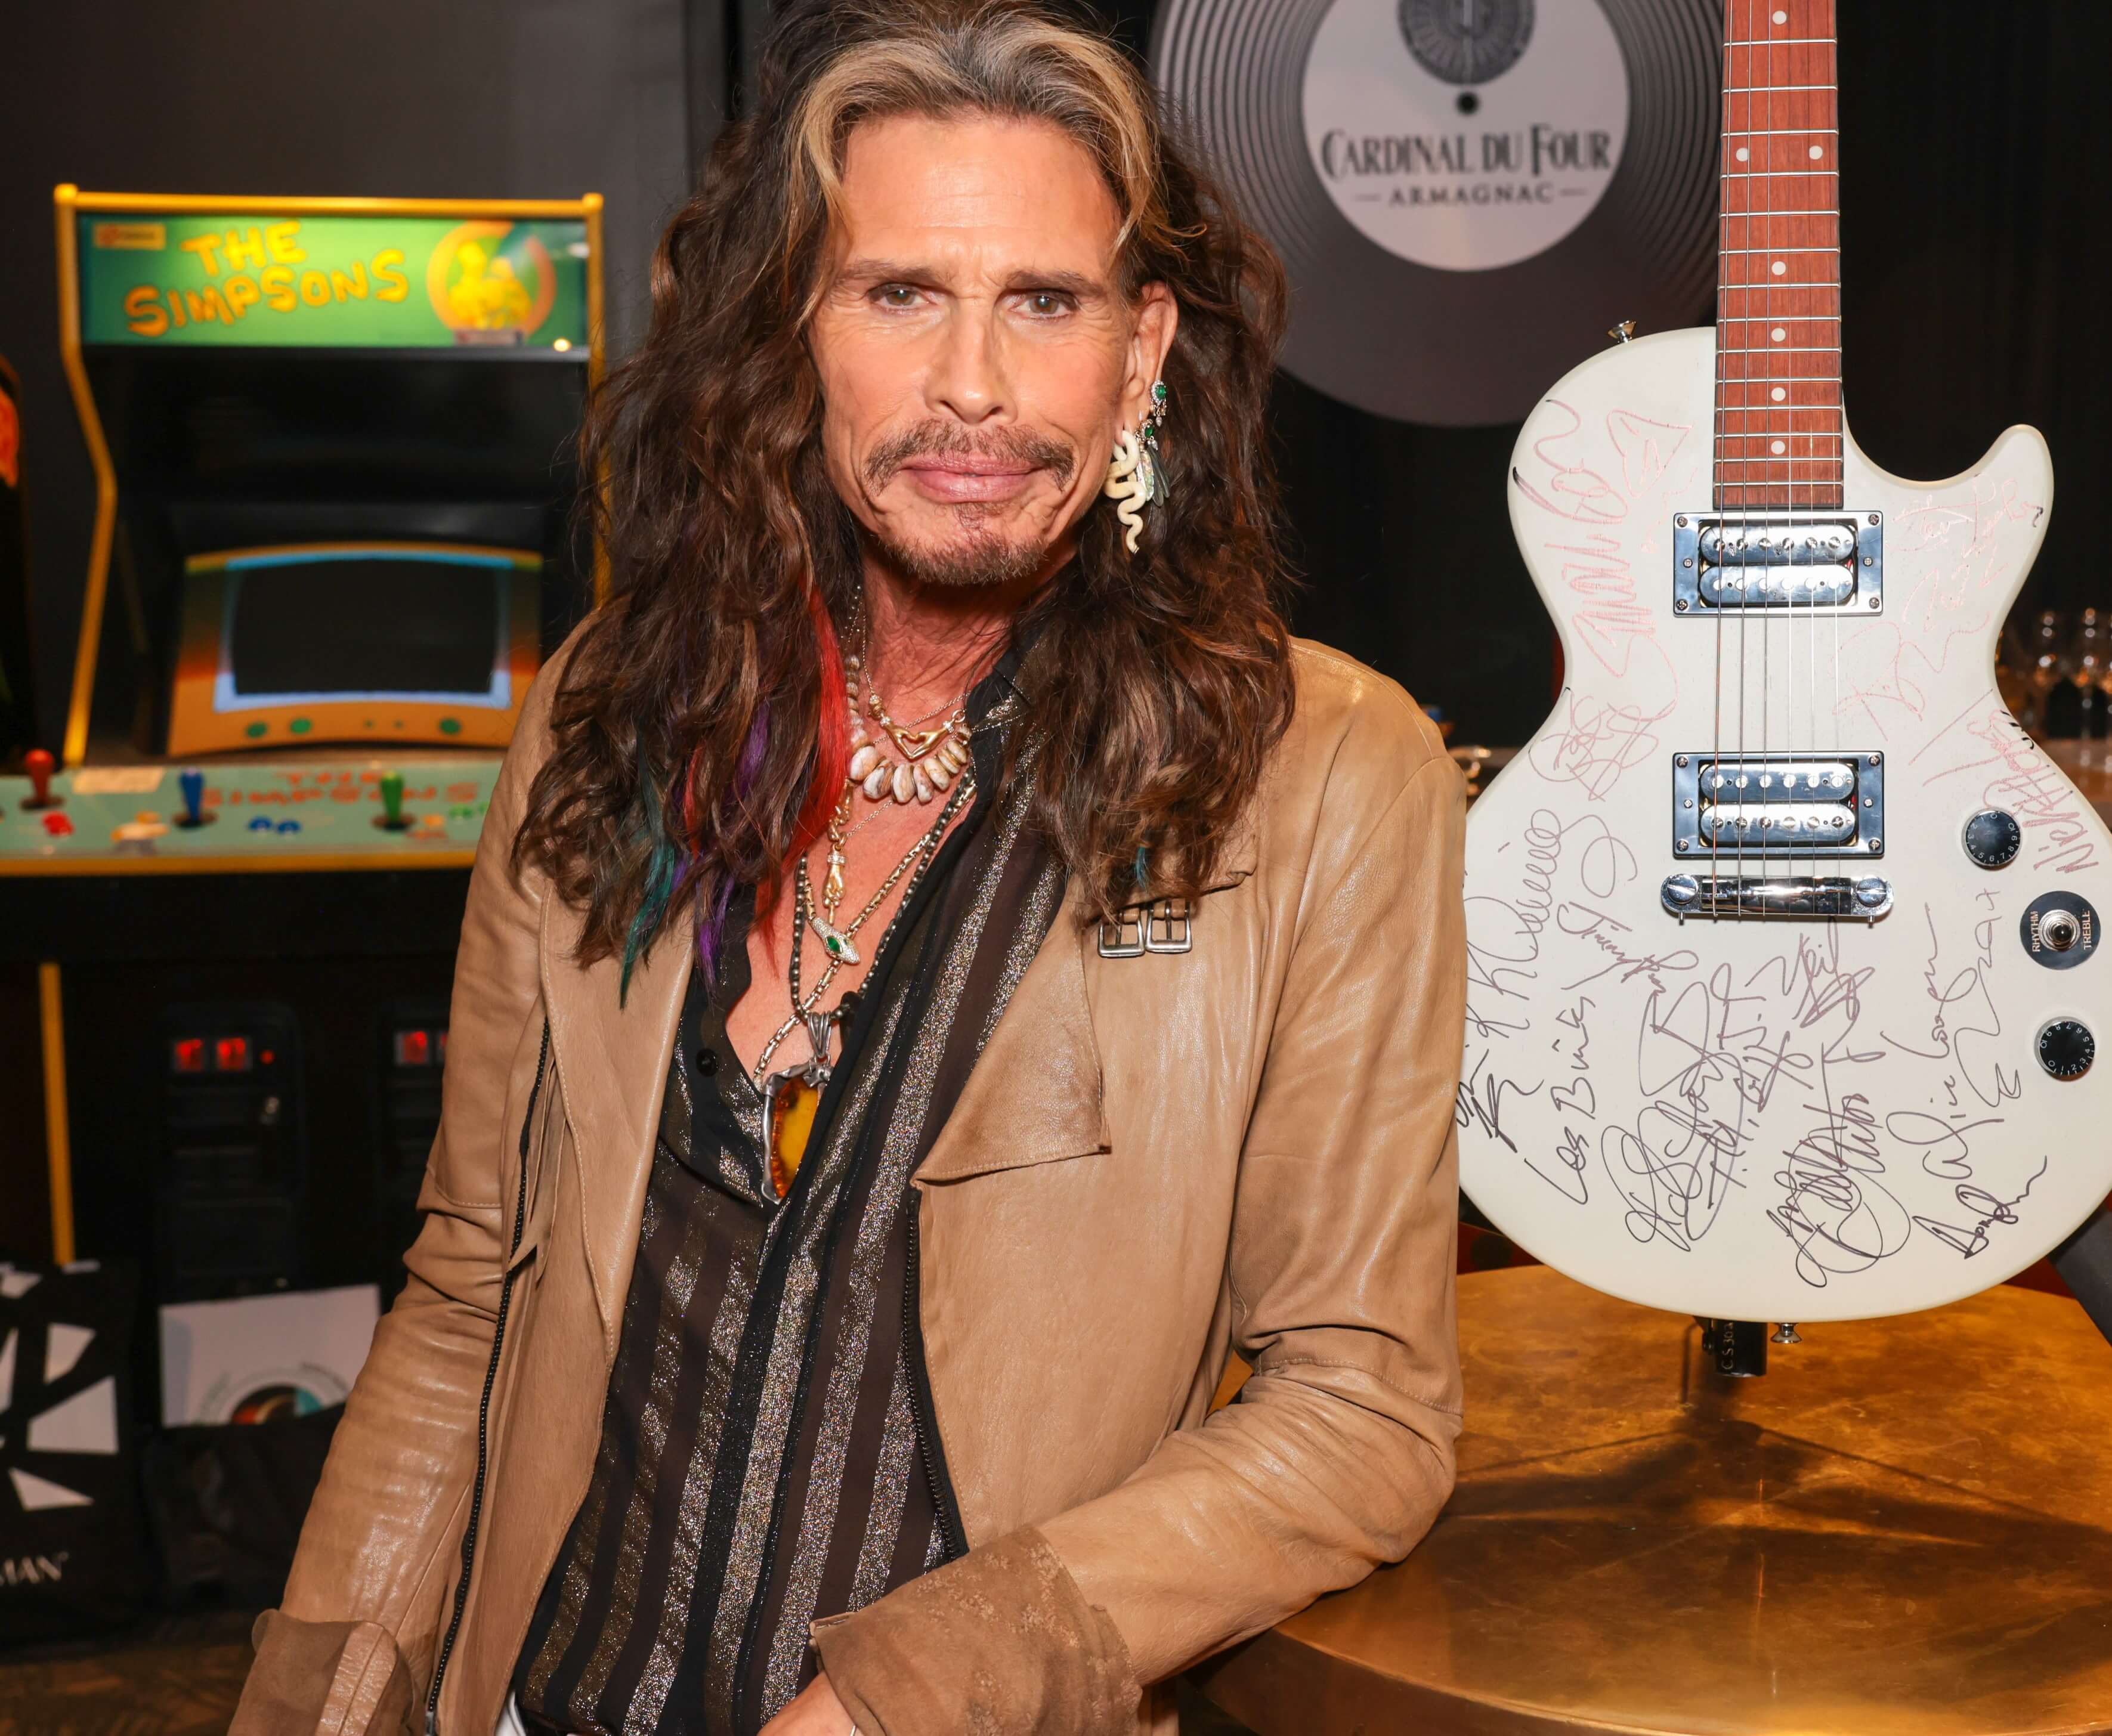 Aerosmith's Steven Tyler near a white guitar